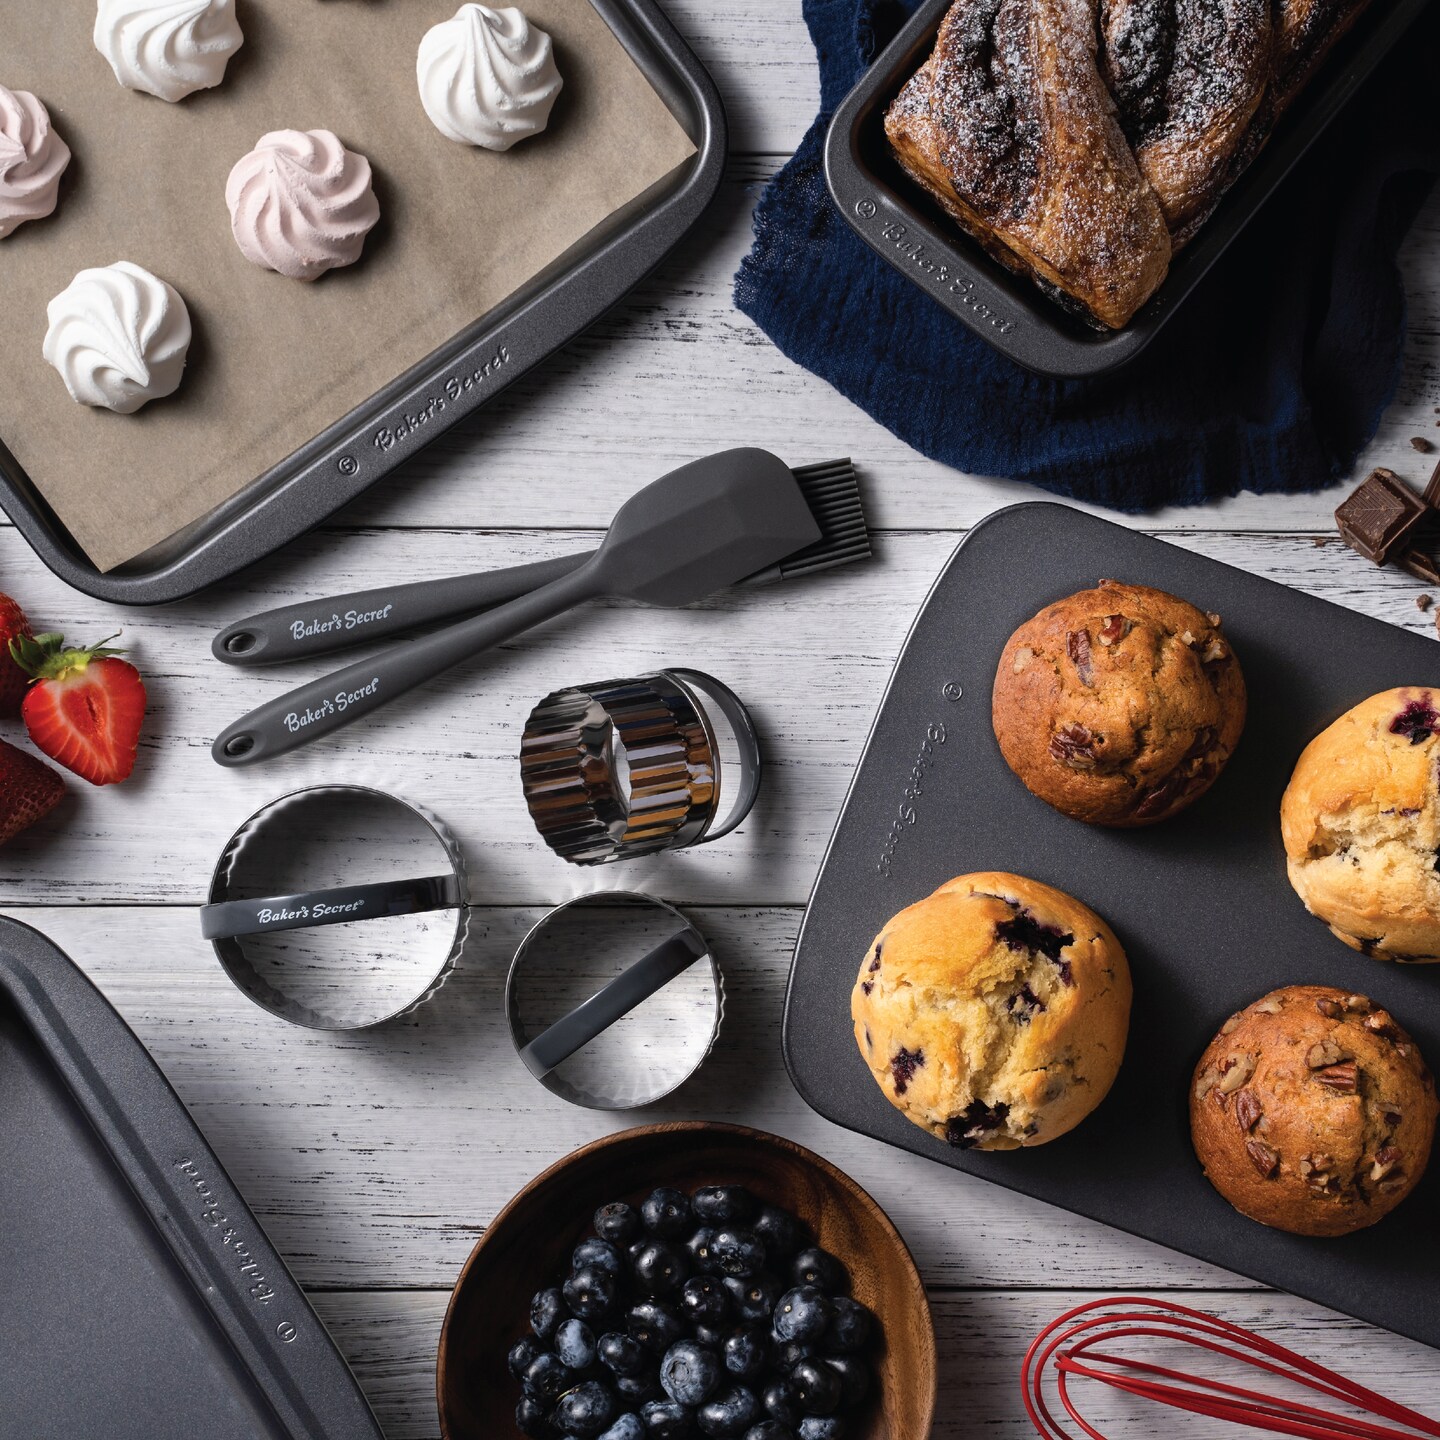 Baker's Secret Stackable Baking Set of 5 Bakeware Pans, Bakeware Set, Baking Pan Set Includes Muffin Pan, Roaster Pan, Square Pan, Cookie Sheet, Loaf